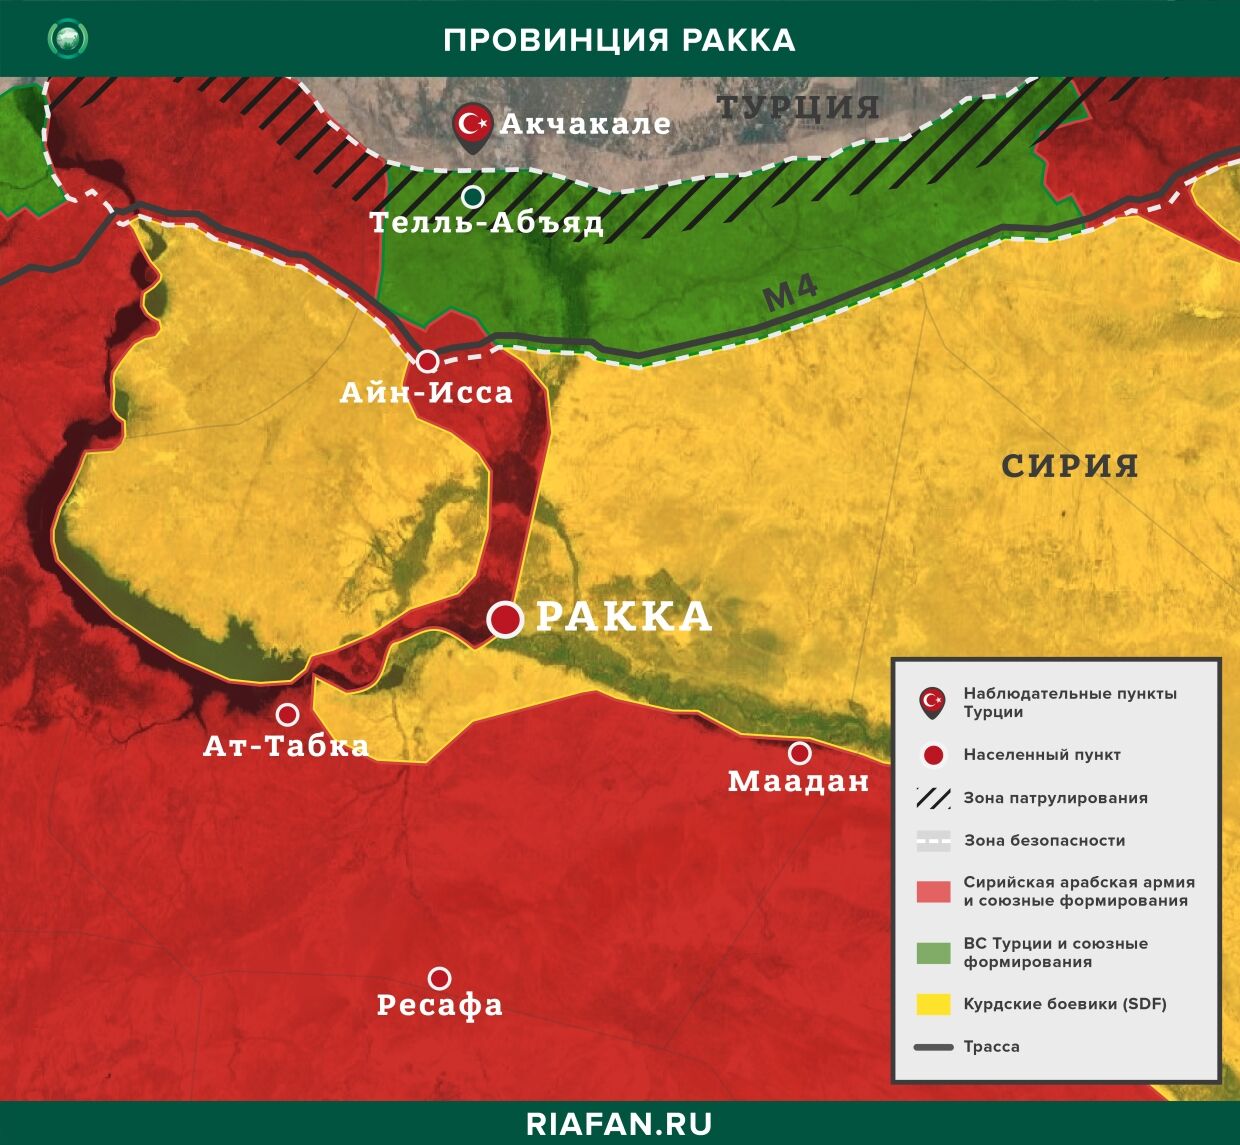 叙利亚每日结果 21 七月 06.00: 库尔德武装分子袭击代尔祖尔, 在阿勒颇中和 3 是恐怖分子